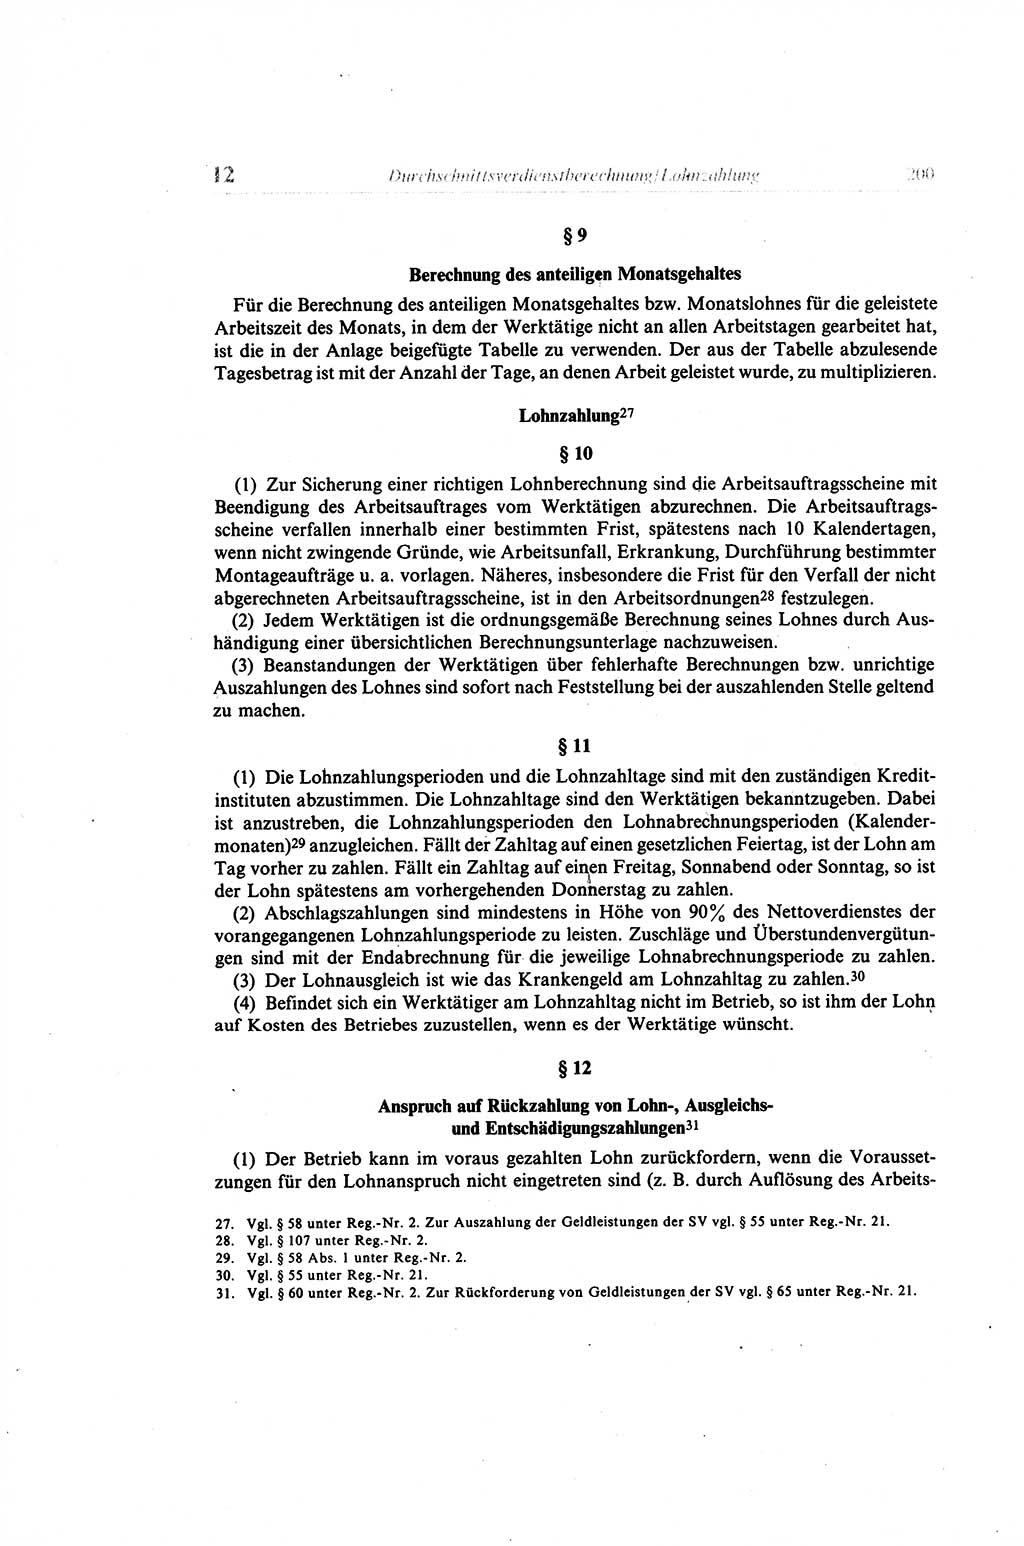 Gesetzbuch der Arbeit (GBA) und andere ausgewählte rechtliche Bestimmungen [Deutsche Demokratische Republik (DDR)] 1968, Seite 200 (GBA DDR 1968, S. 200)